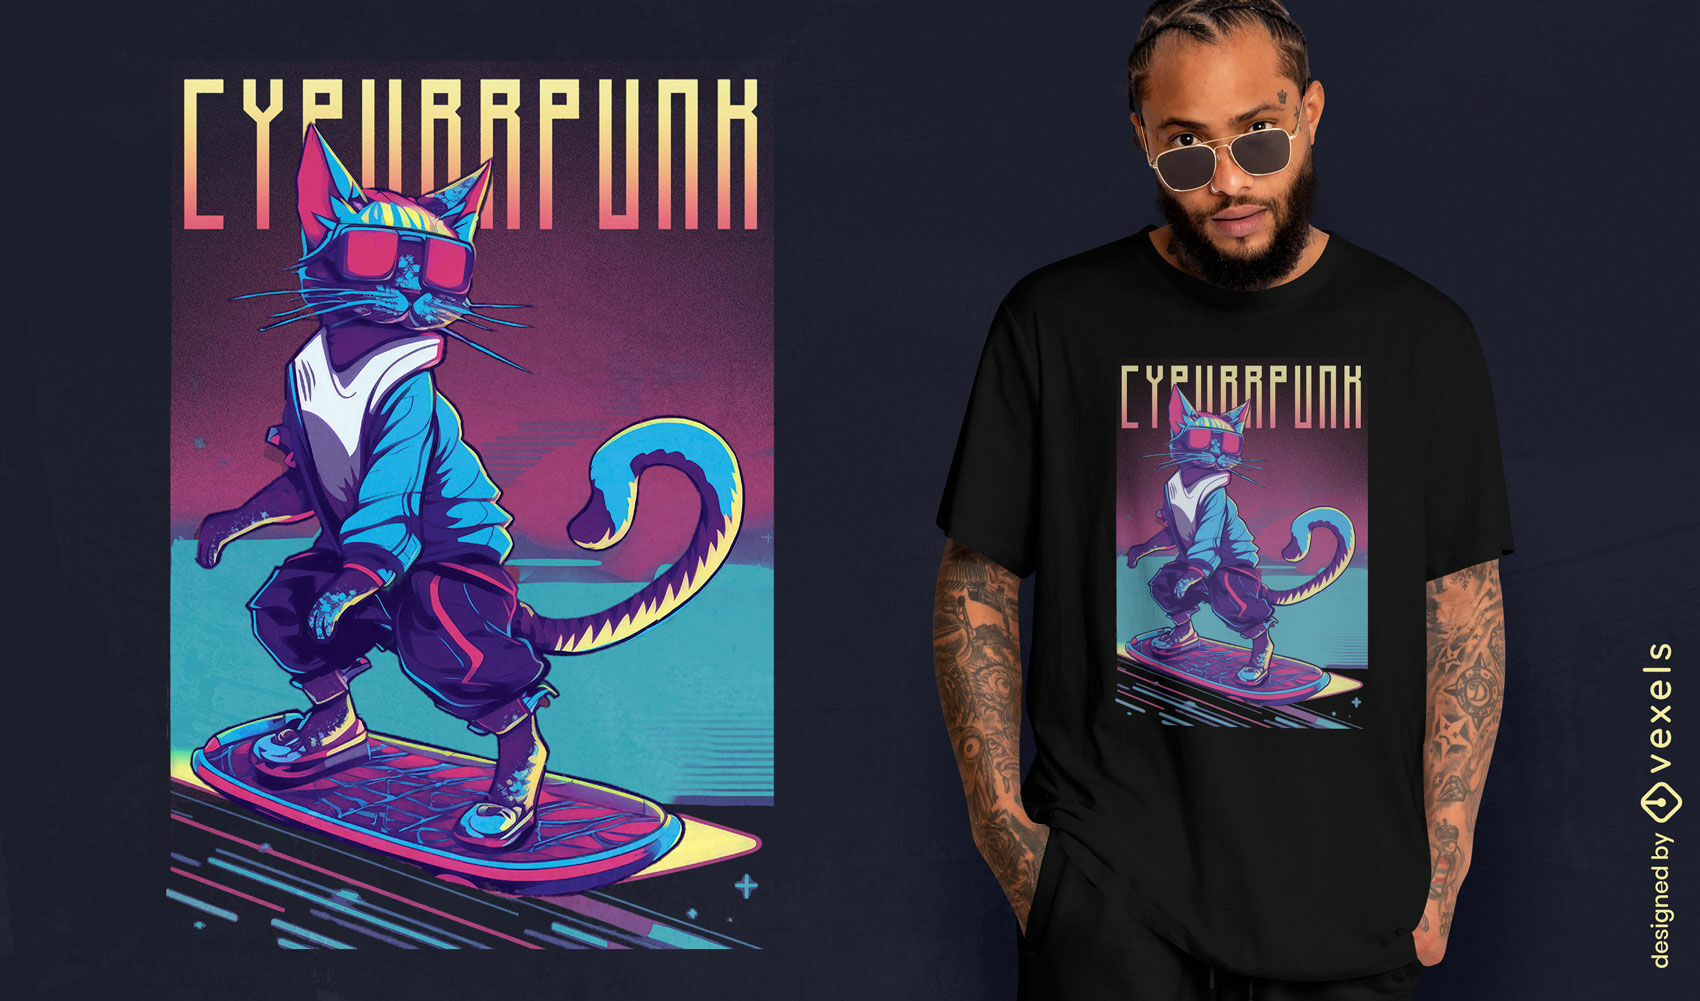 Cyberpunk skater cat t-shirt design